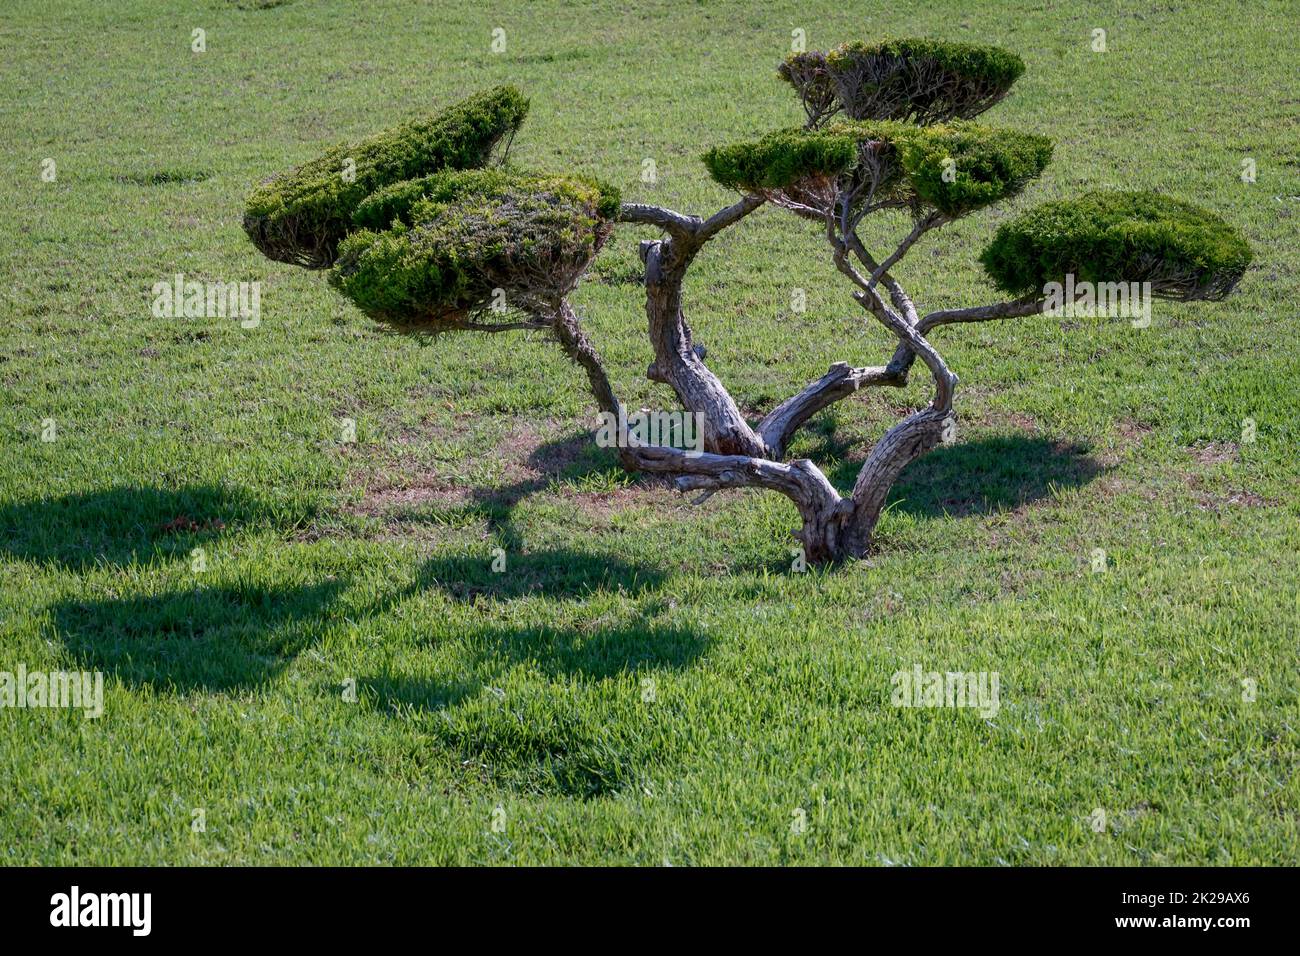 A conifer cut as a bonsai on a lawn. Stock Photo